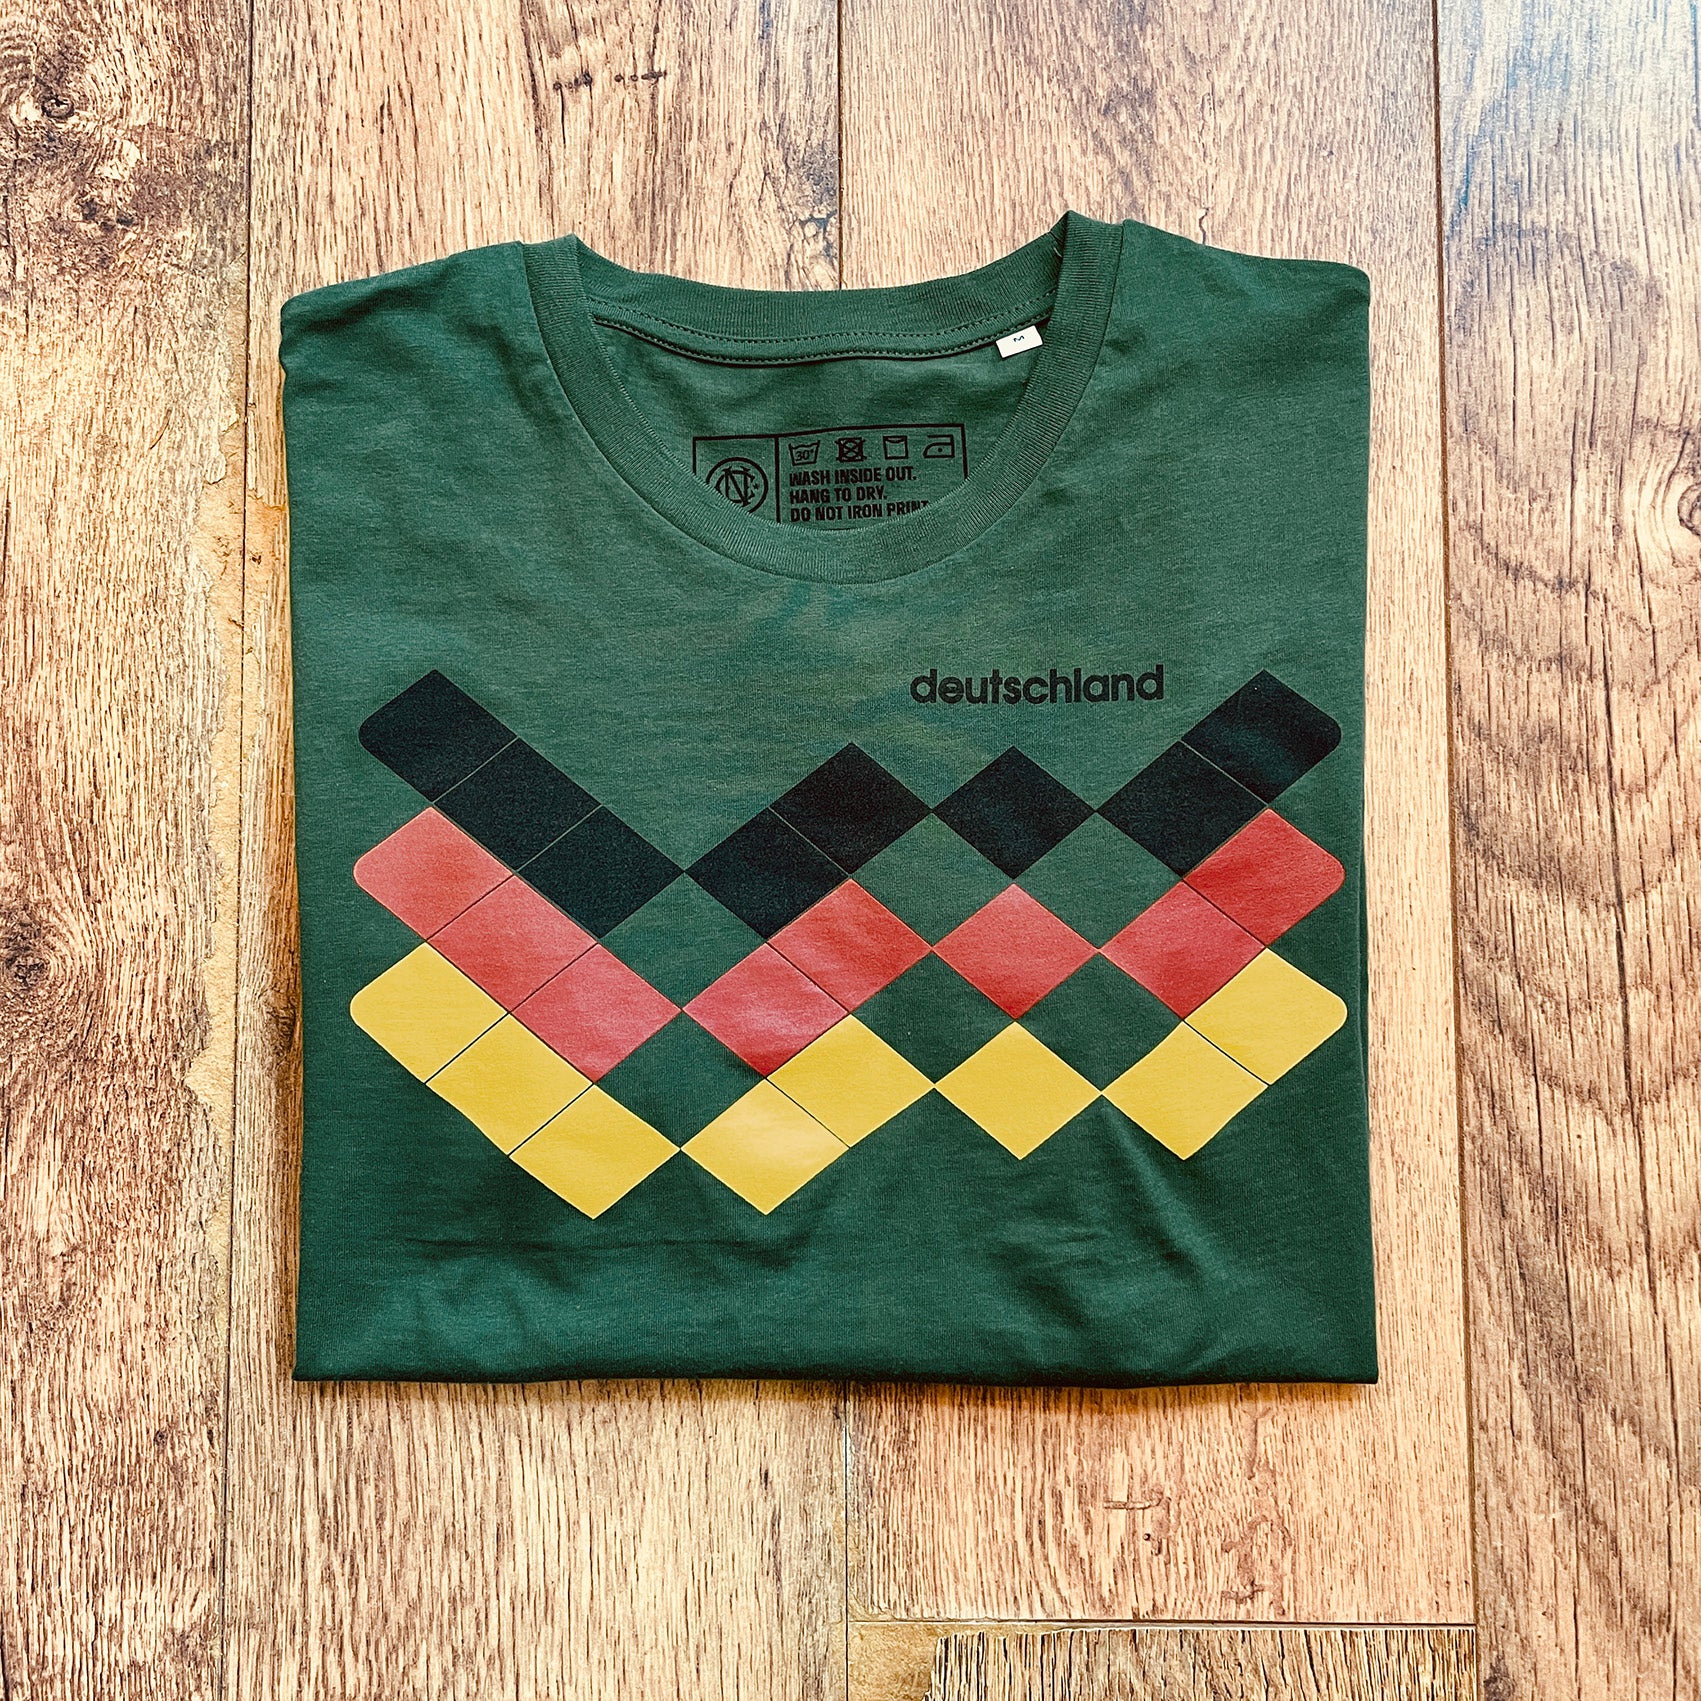 Germany Deutschland 1990 football shirt t-shirt